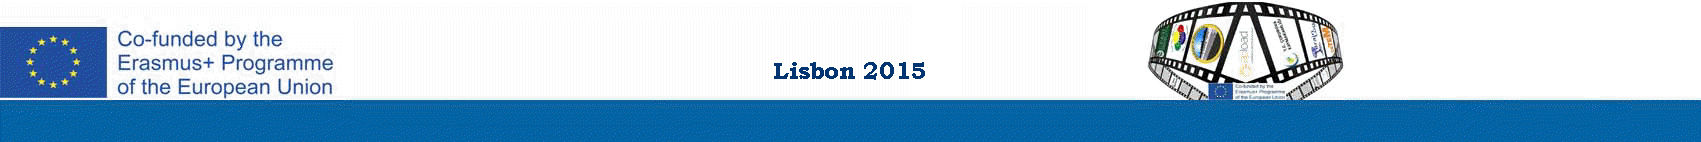 Lisbon 2015